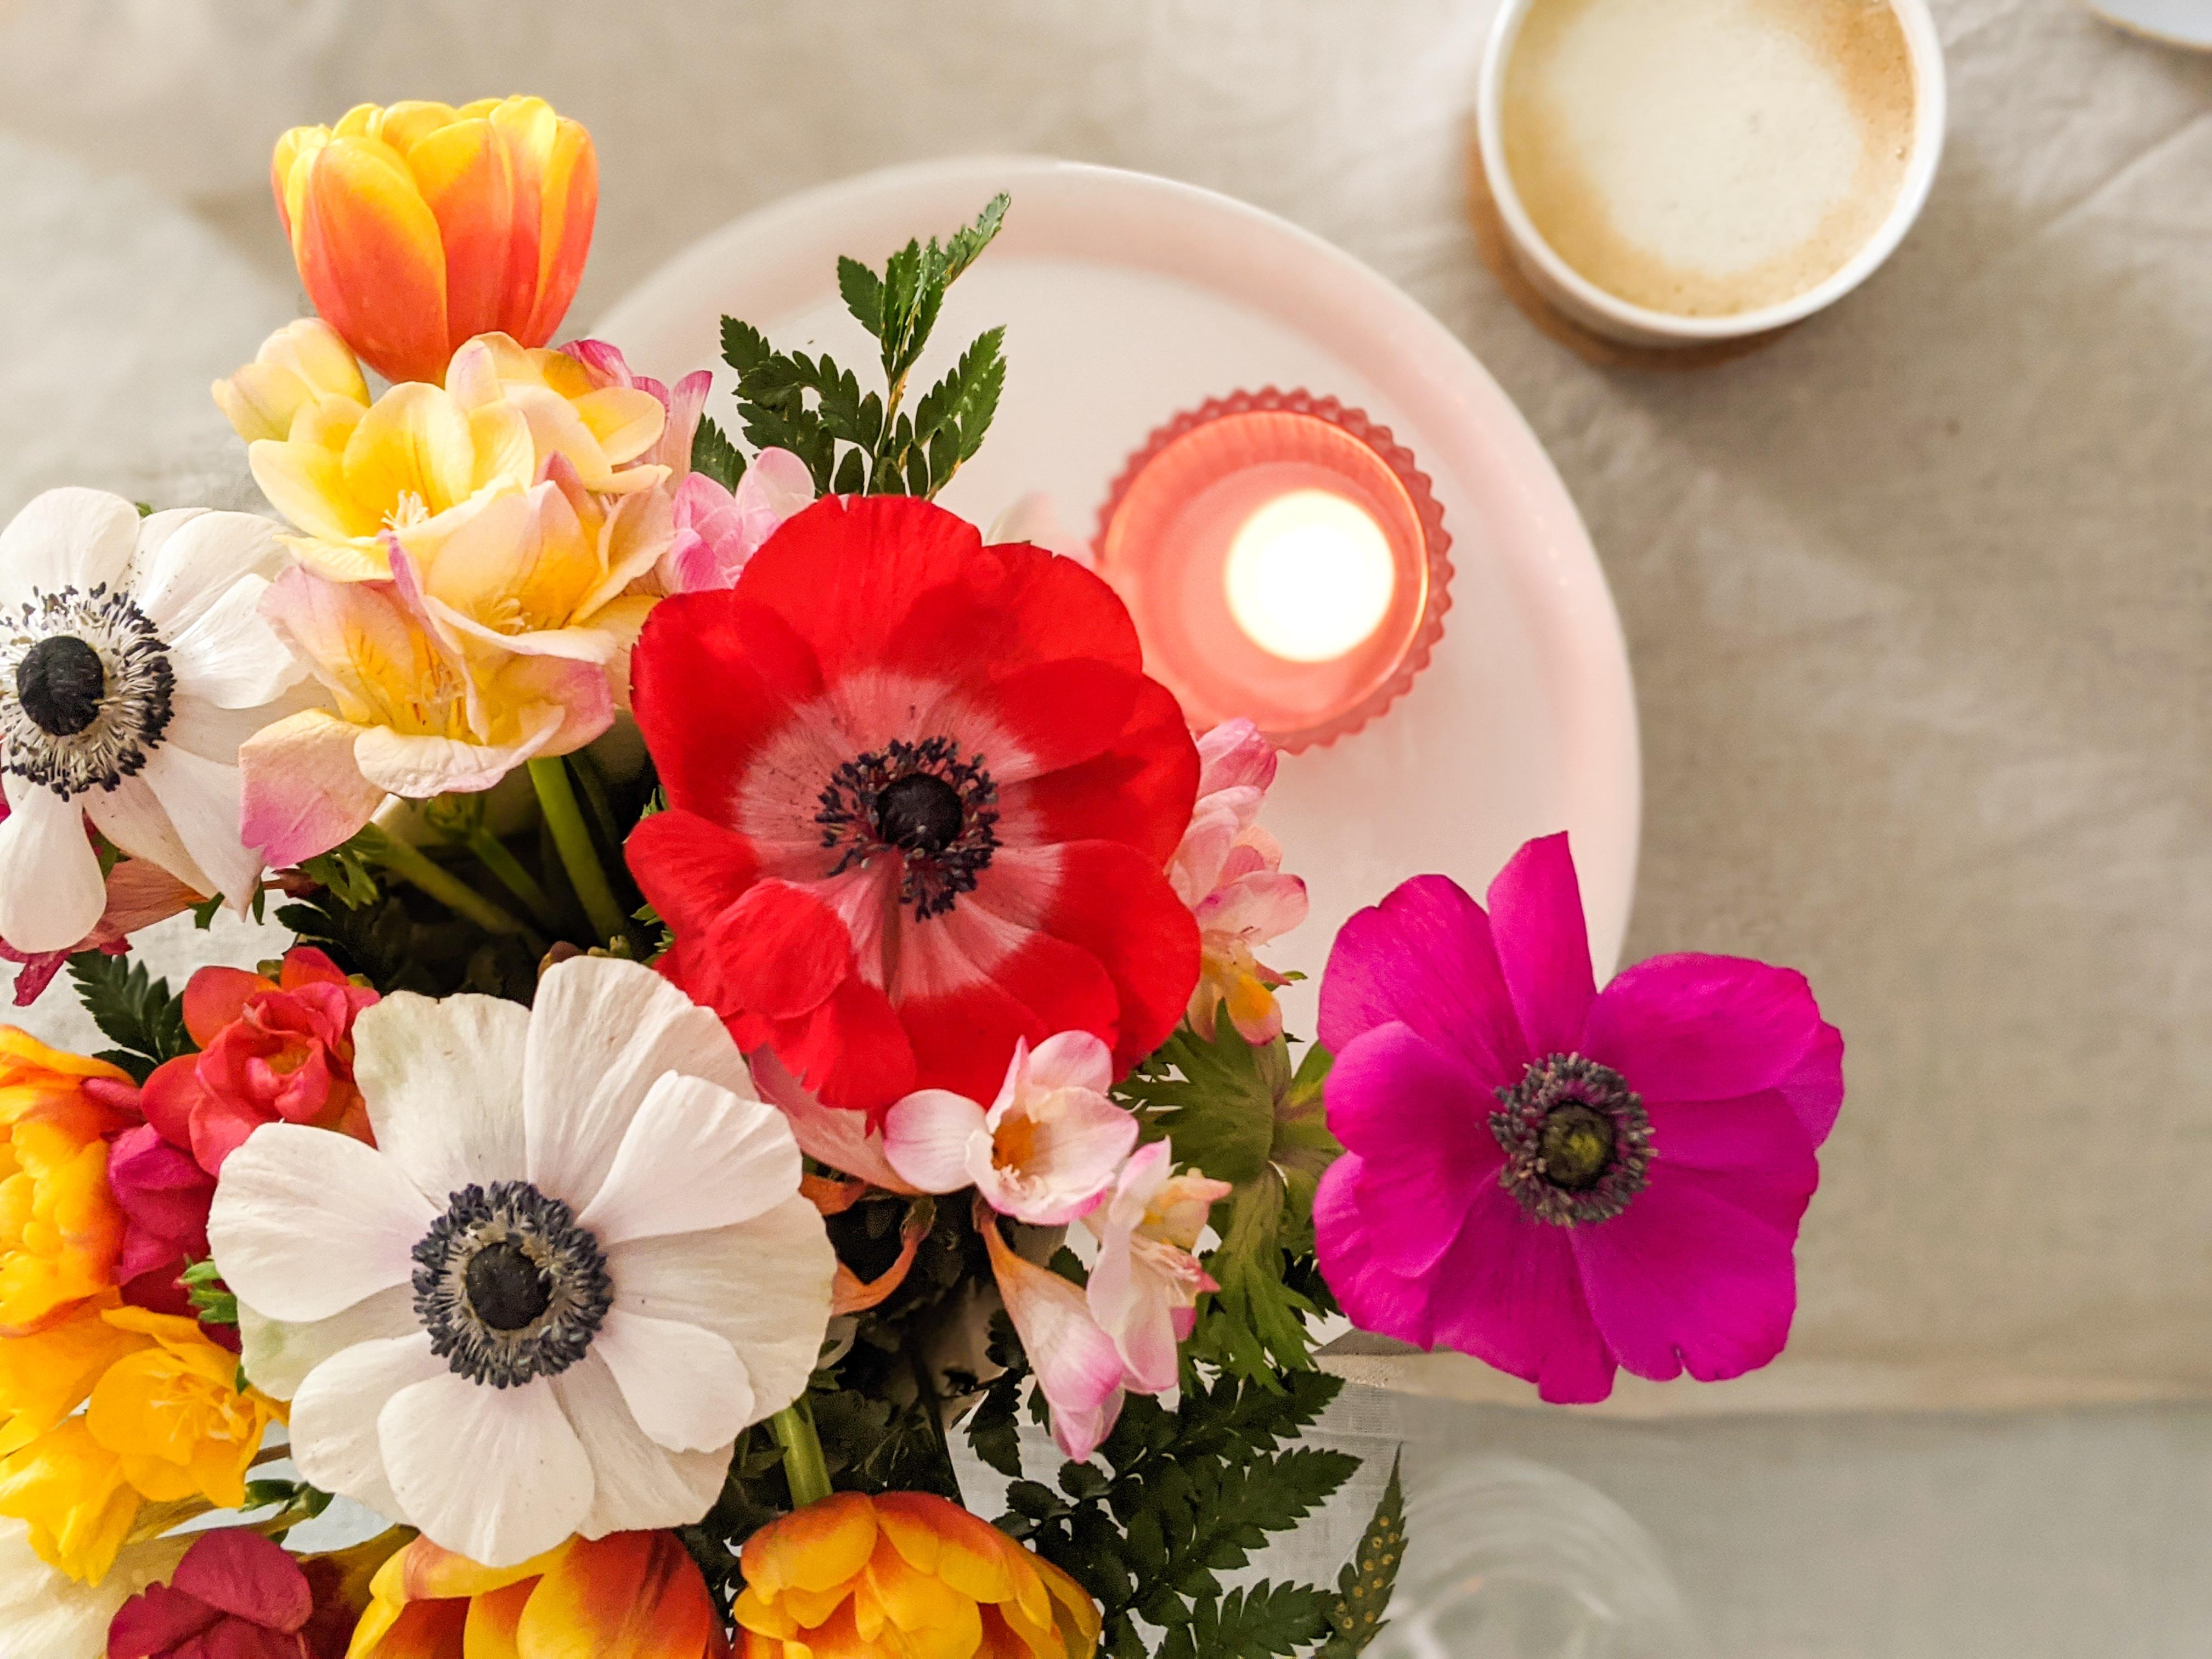 #pflanzen #livingchallenge

Blumengruß
#anemone #tulpen #ranunkeln #kerzen #kaffee #tischdeko 